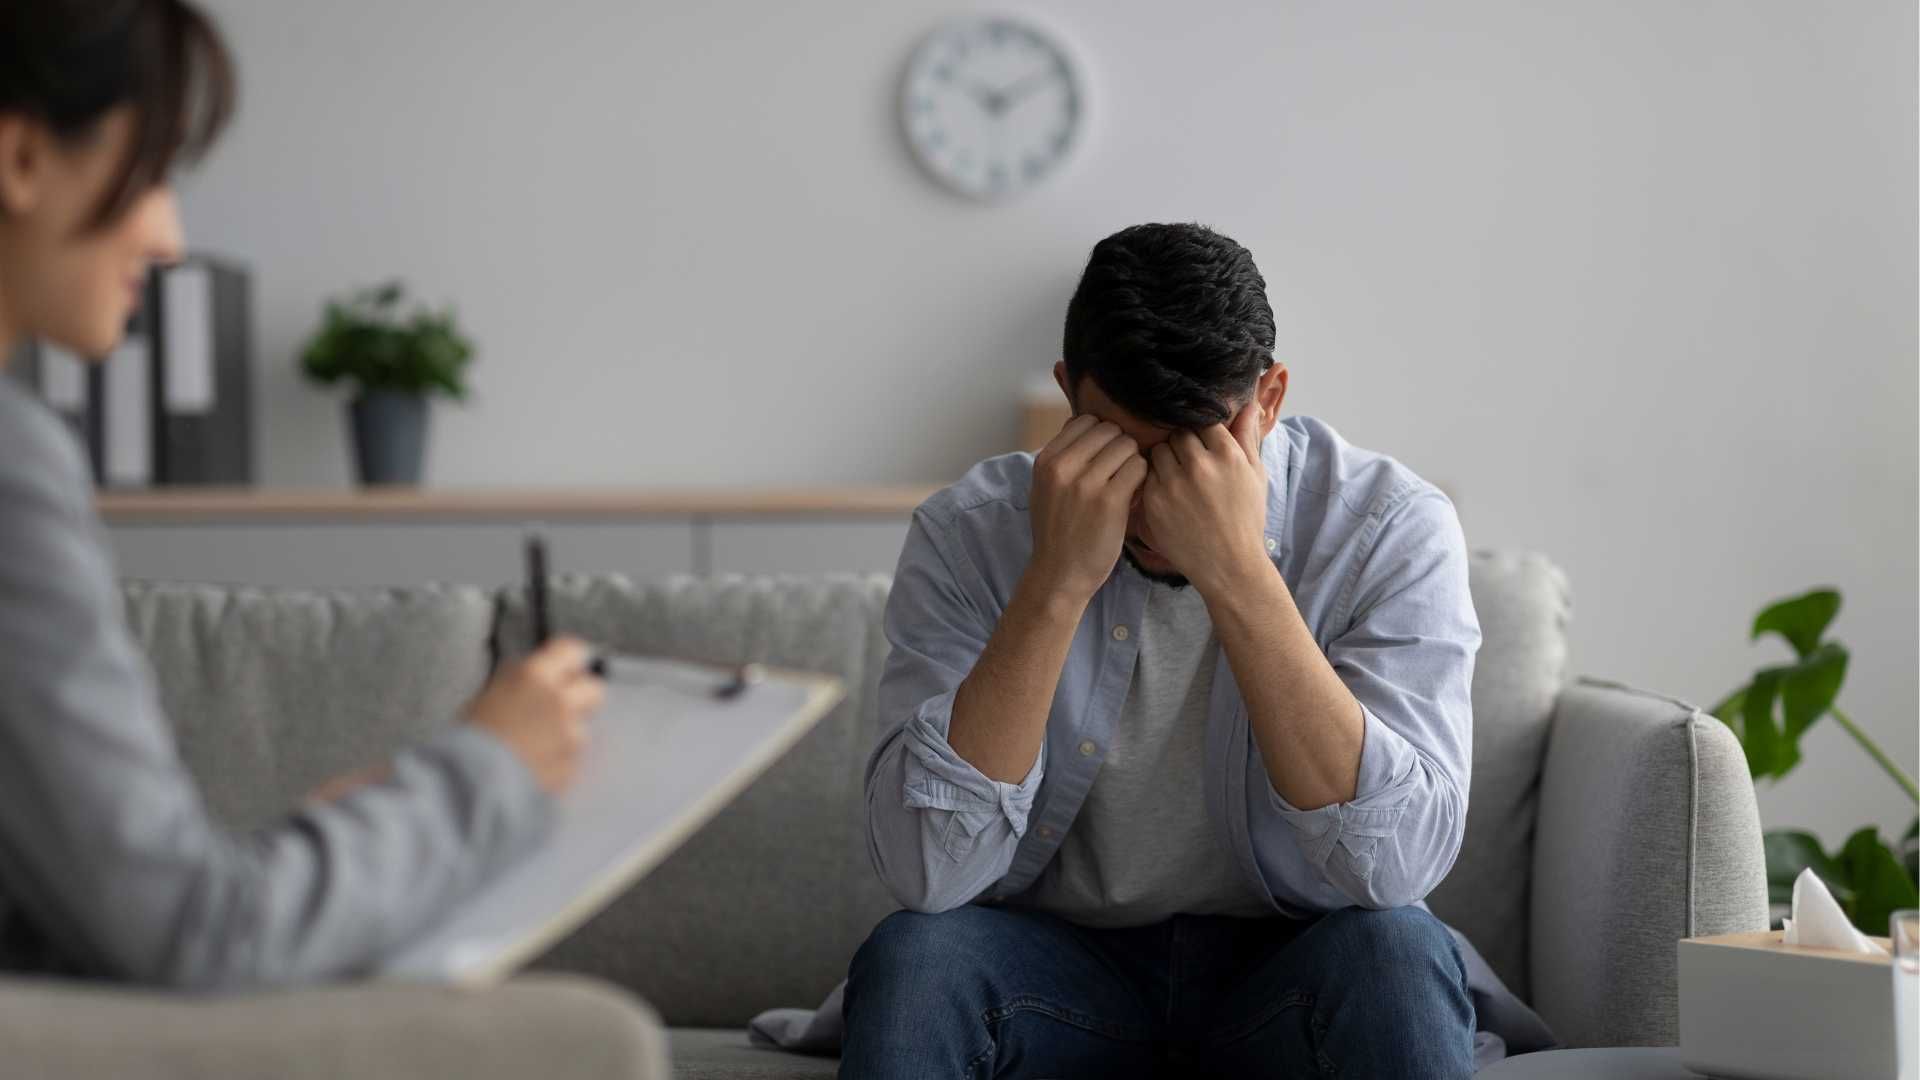 مشاوره روانشناسی سازگاری با ناکامی بعد از طلاق و شکست عاطفی (10 جلسه تلفنی ، هر جلسه 45 دقیقه)